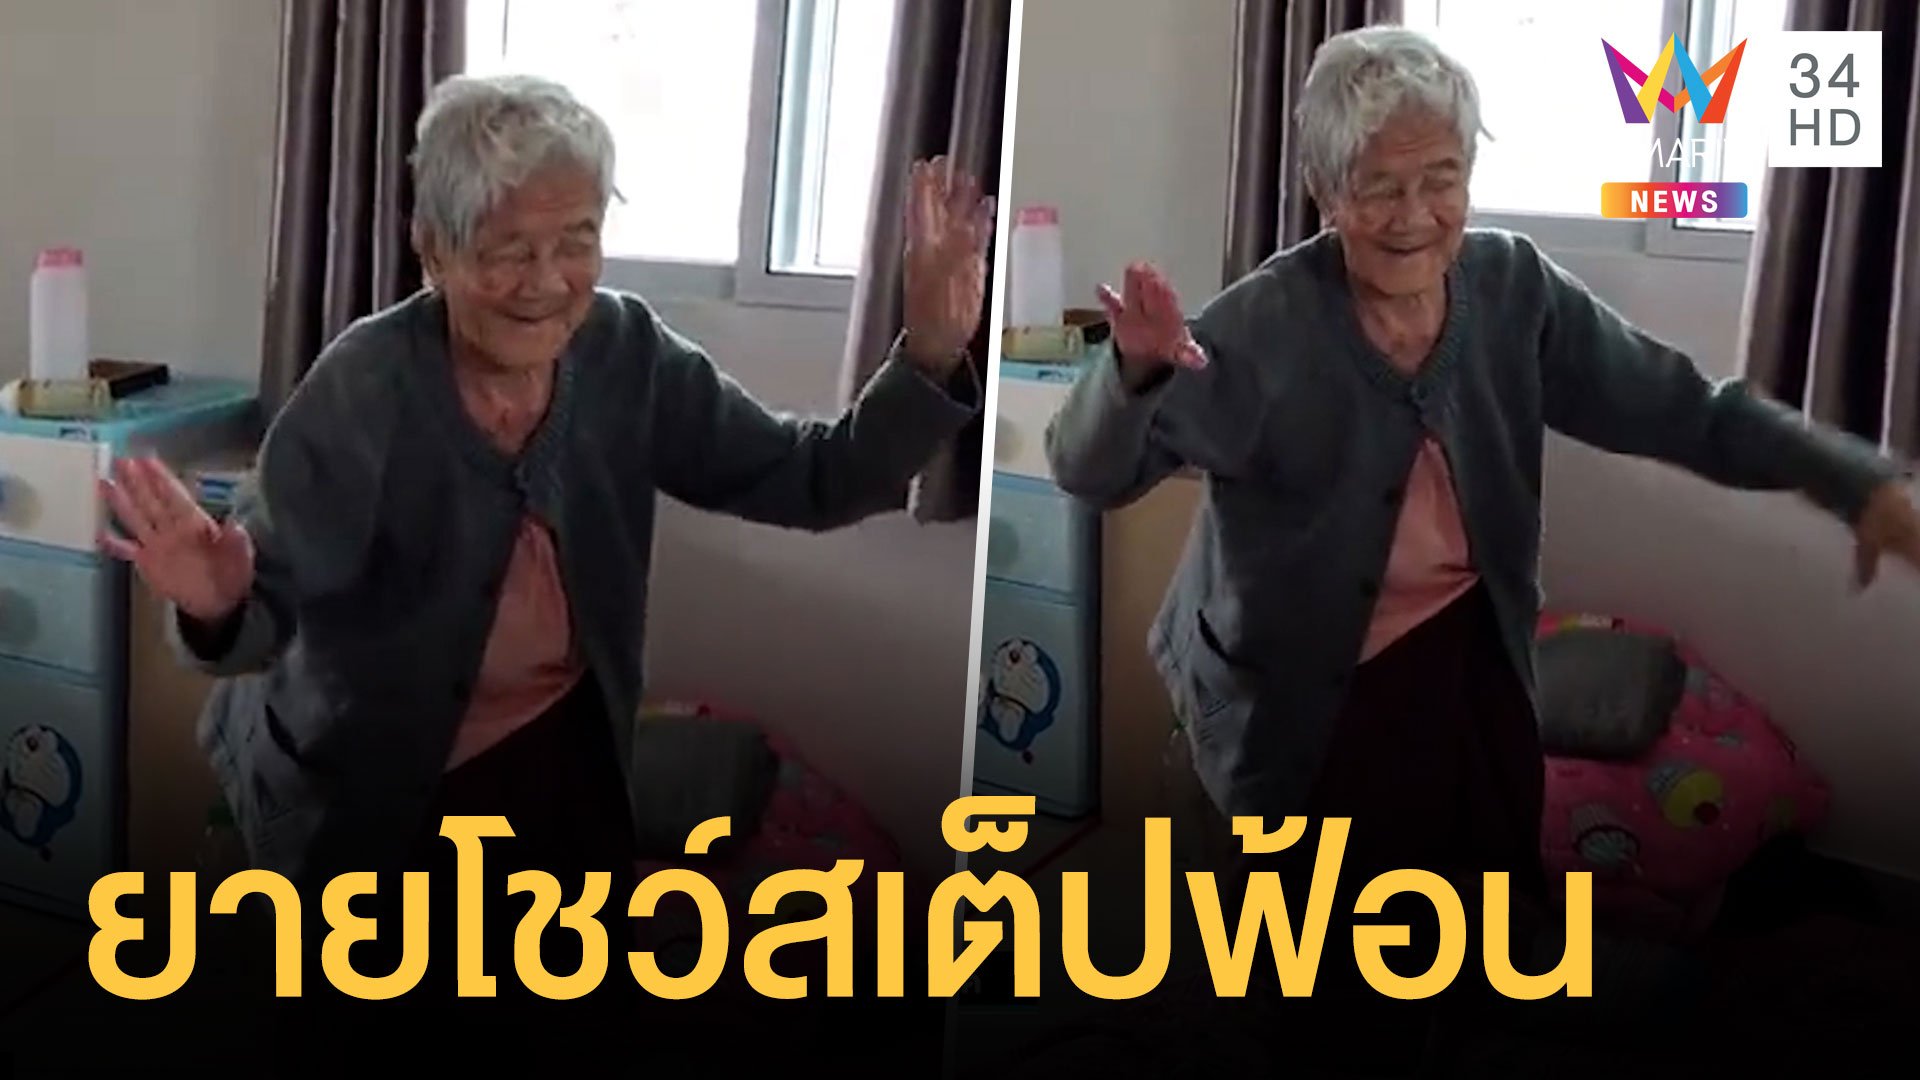 คุณยายวัย 95 ลืมอายุ โชว์สเต็ปฟ้อนอวดลูกหลาน | ข่าวอรุณอมรินทร์ | 10 ม.ค. 64 | AMARIN TVHD34